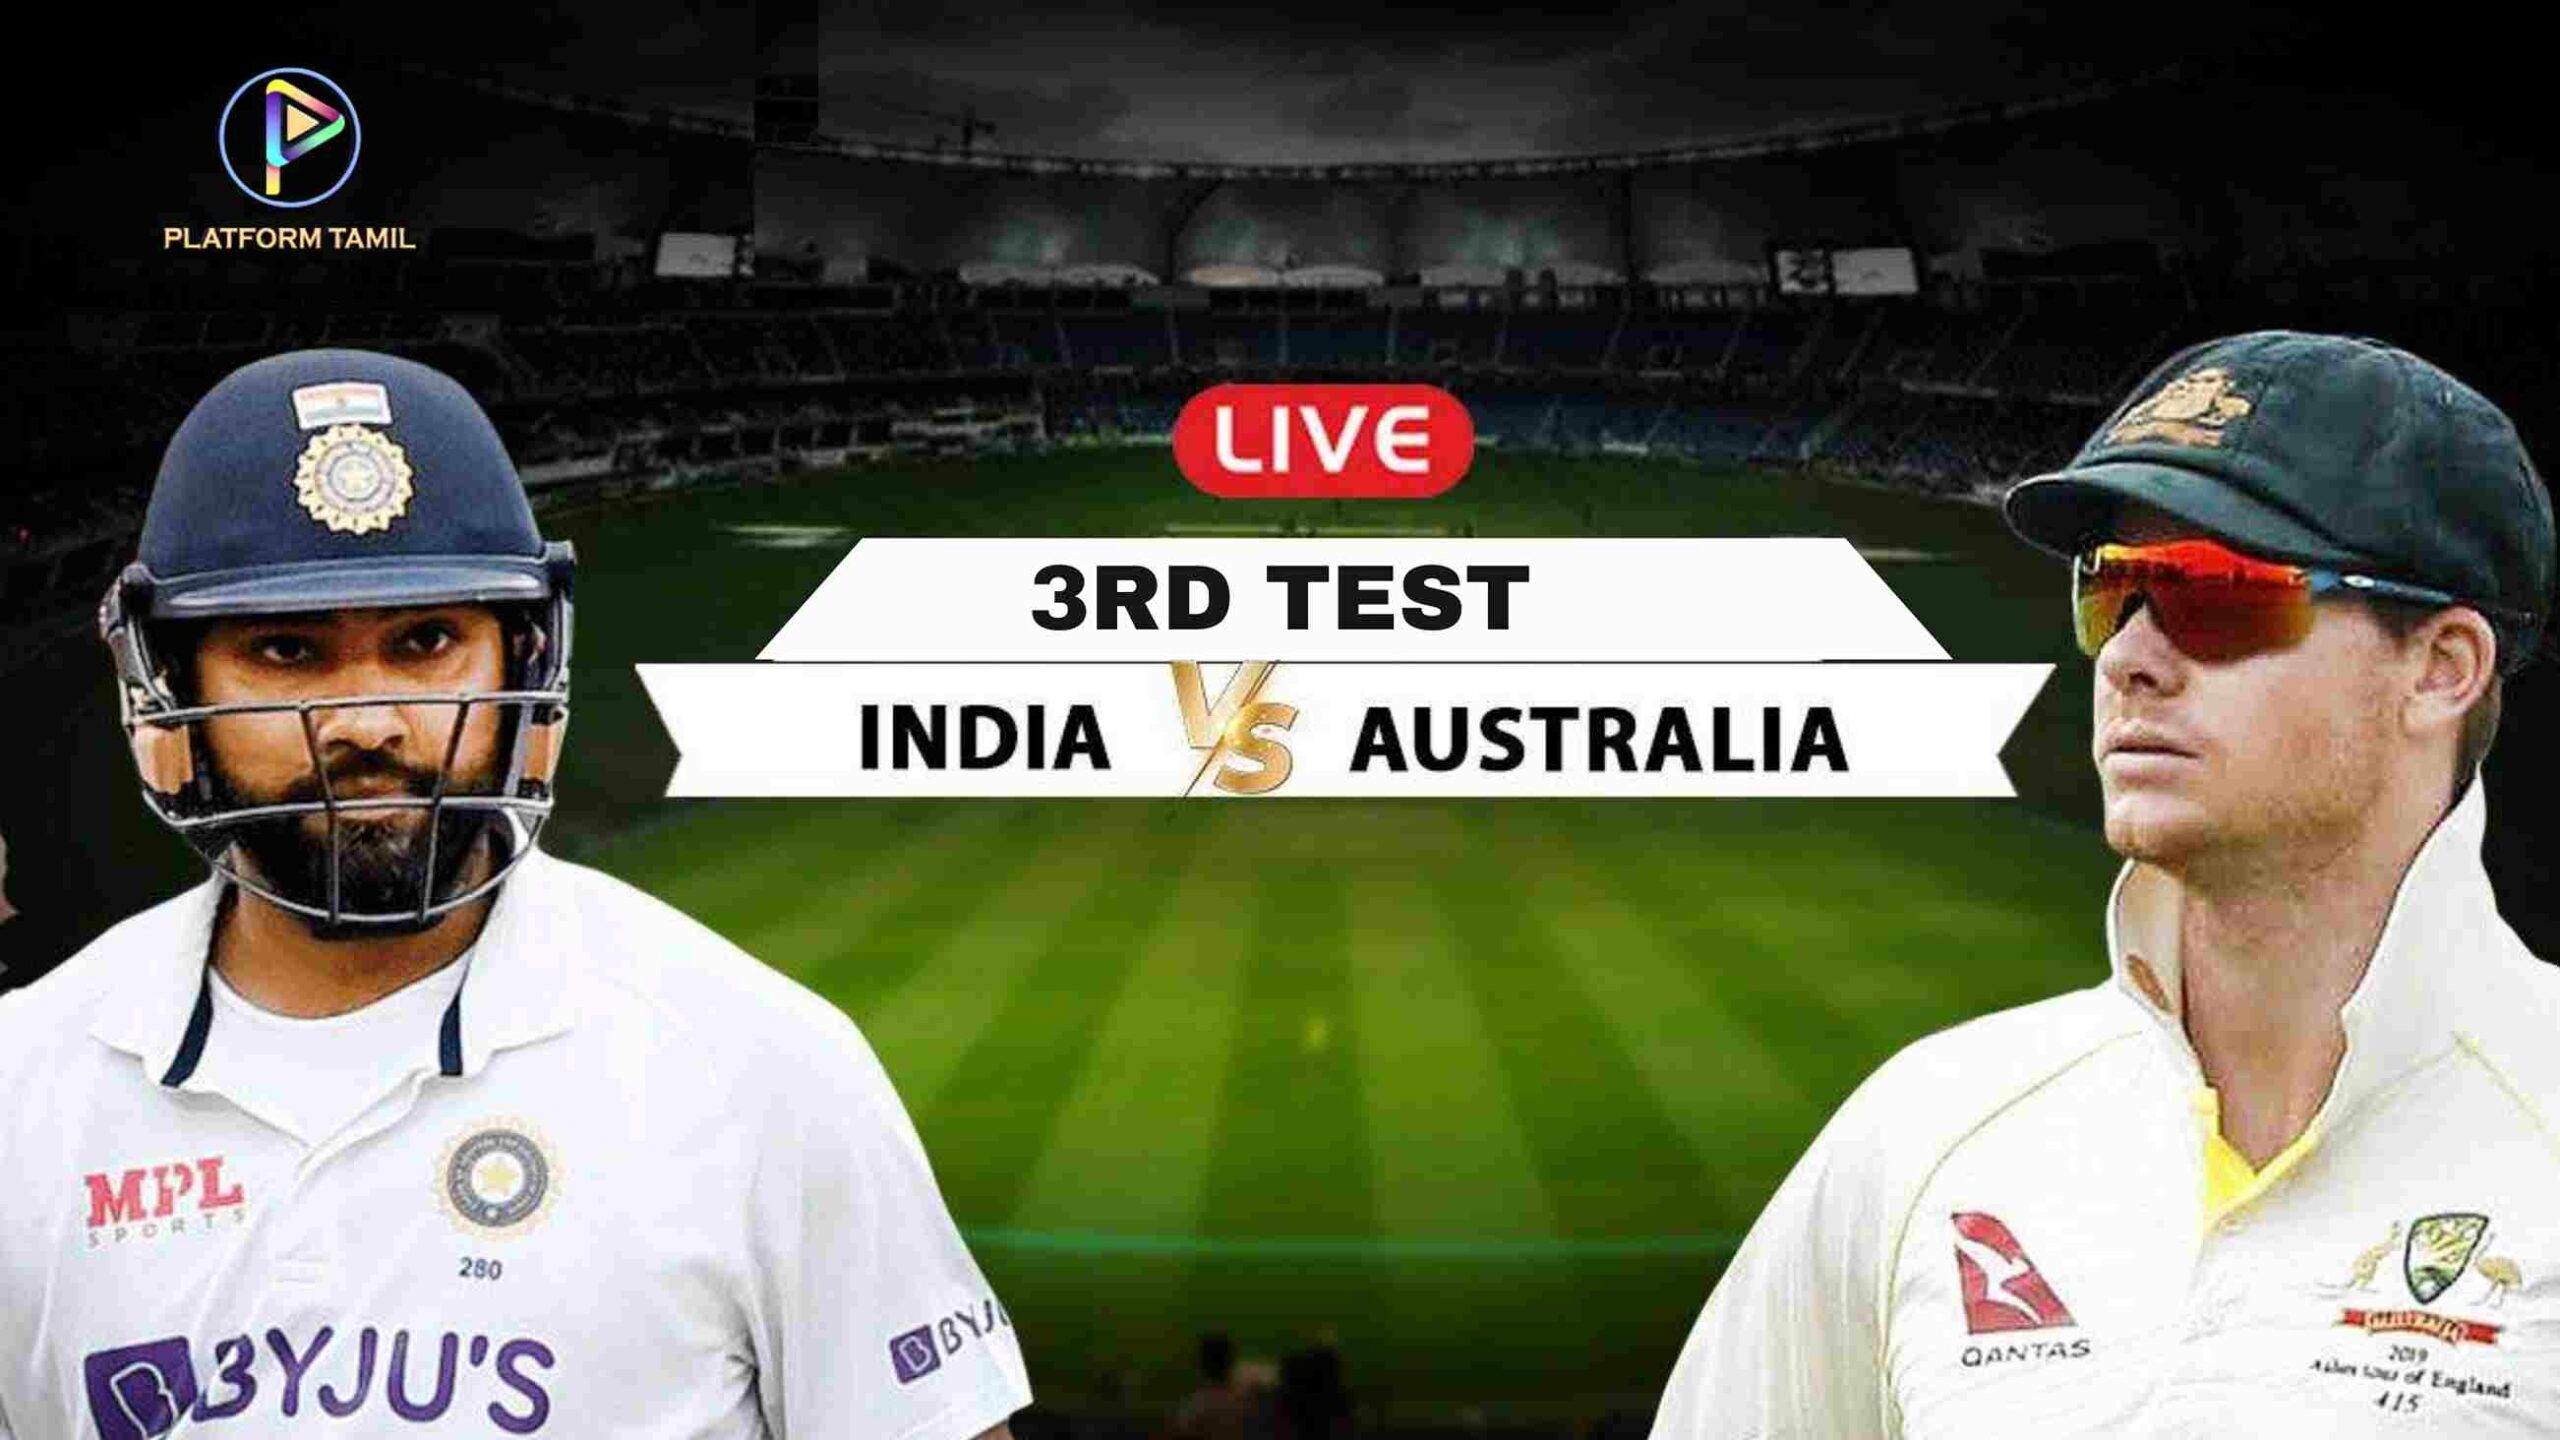 IND VS AUS 3rd Test - Platform Tamil